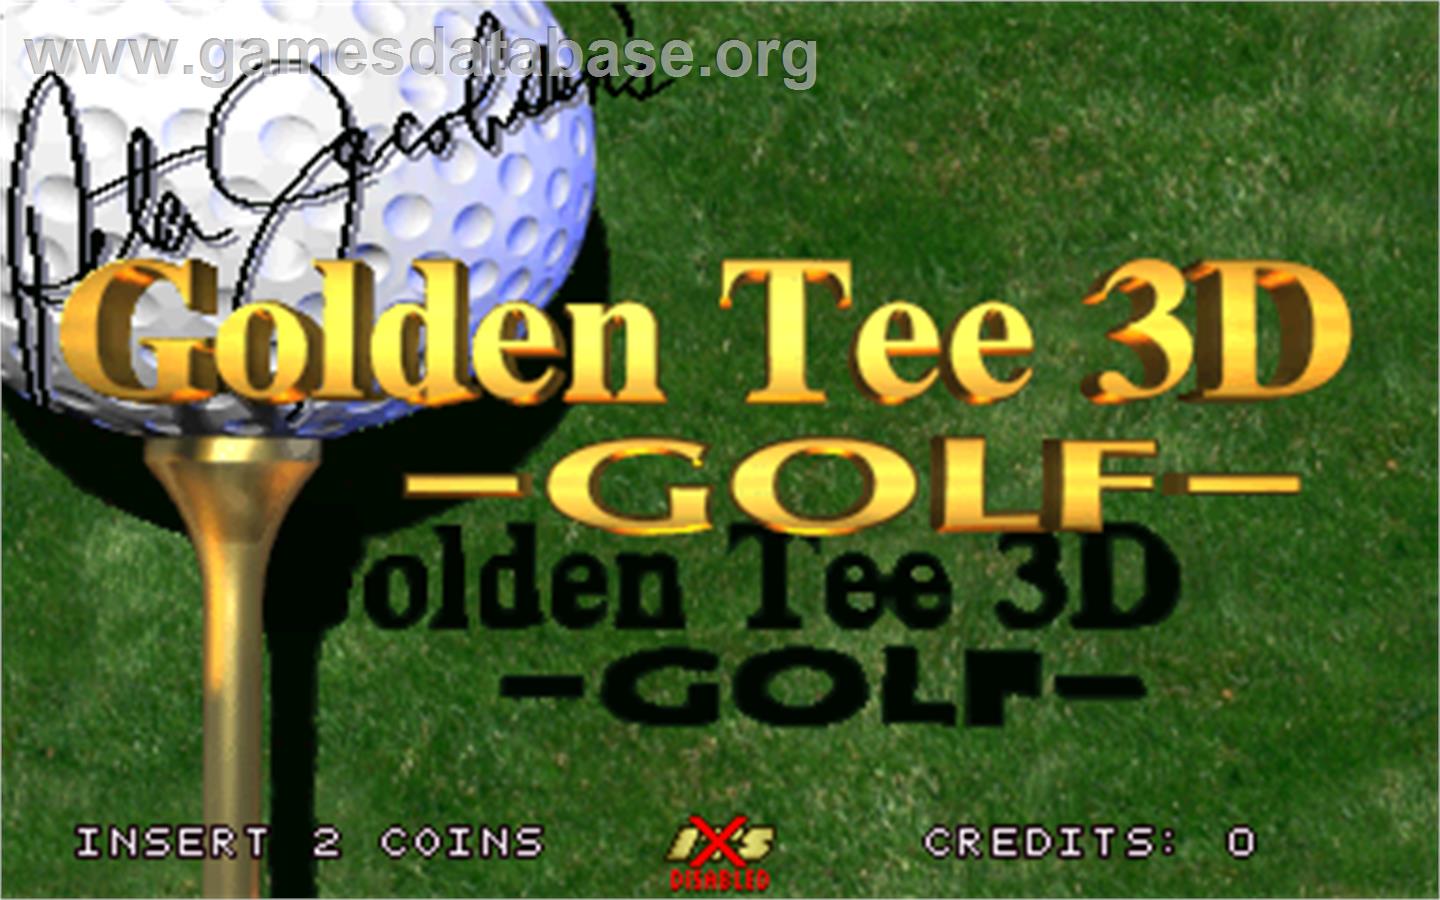 Golden Tee 3D Golf Tournament - Arcade - Artwork - Title Screen